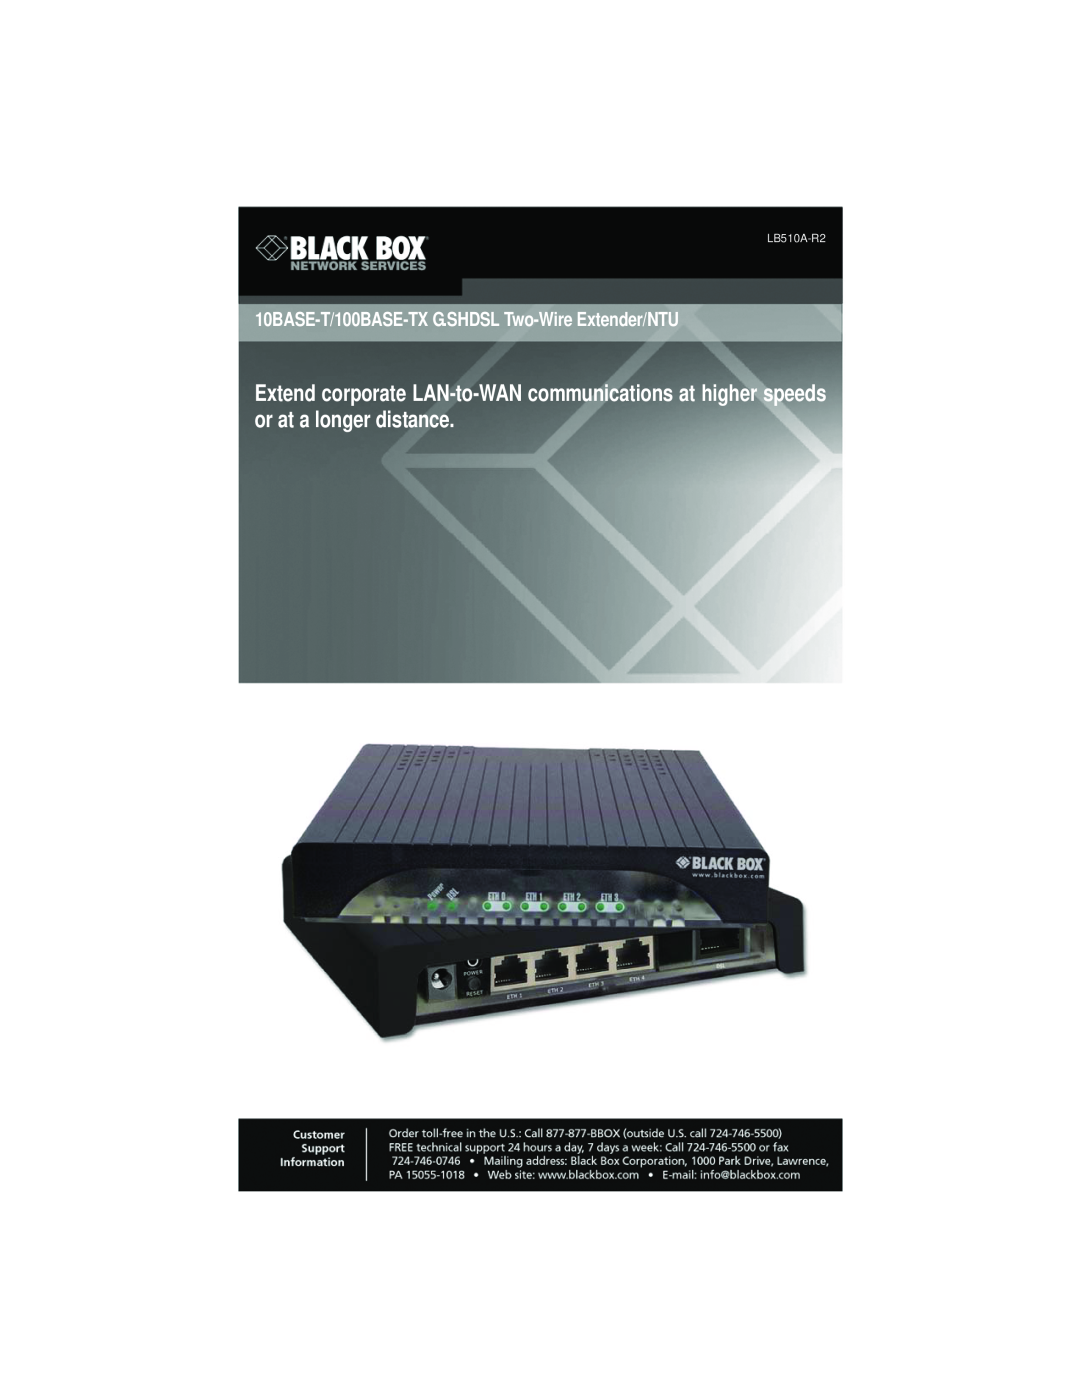 Black Box 10BASE-T/100BASE-TX G.SHDSL Two-Wire Extender/NTU manual 10BASE-T/100BASE-TXG.SHDSL Two-WireExtender/NTU 